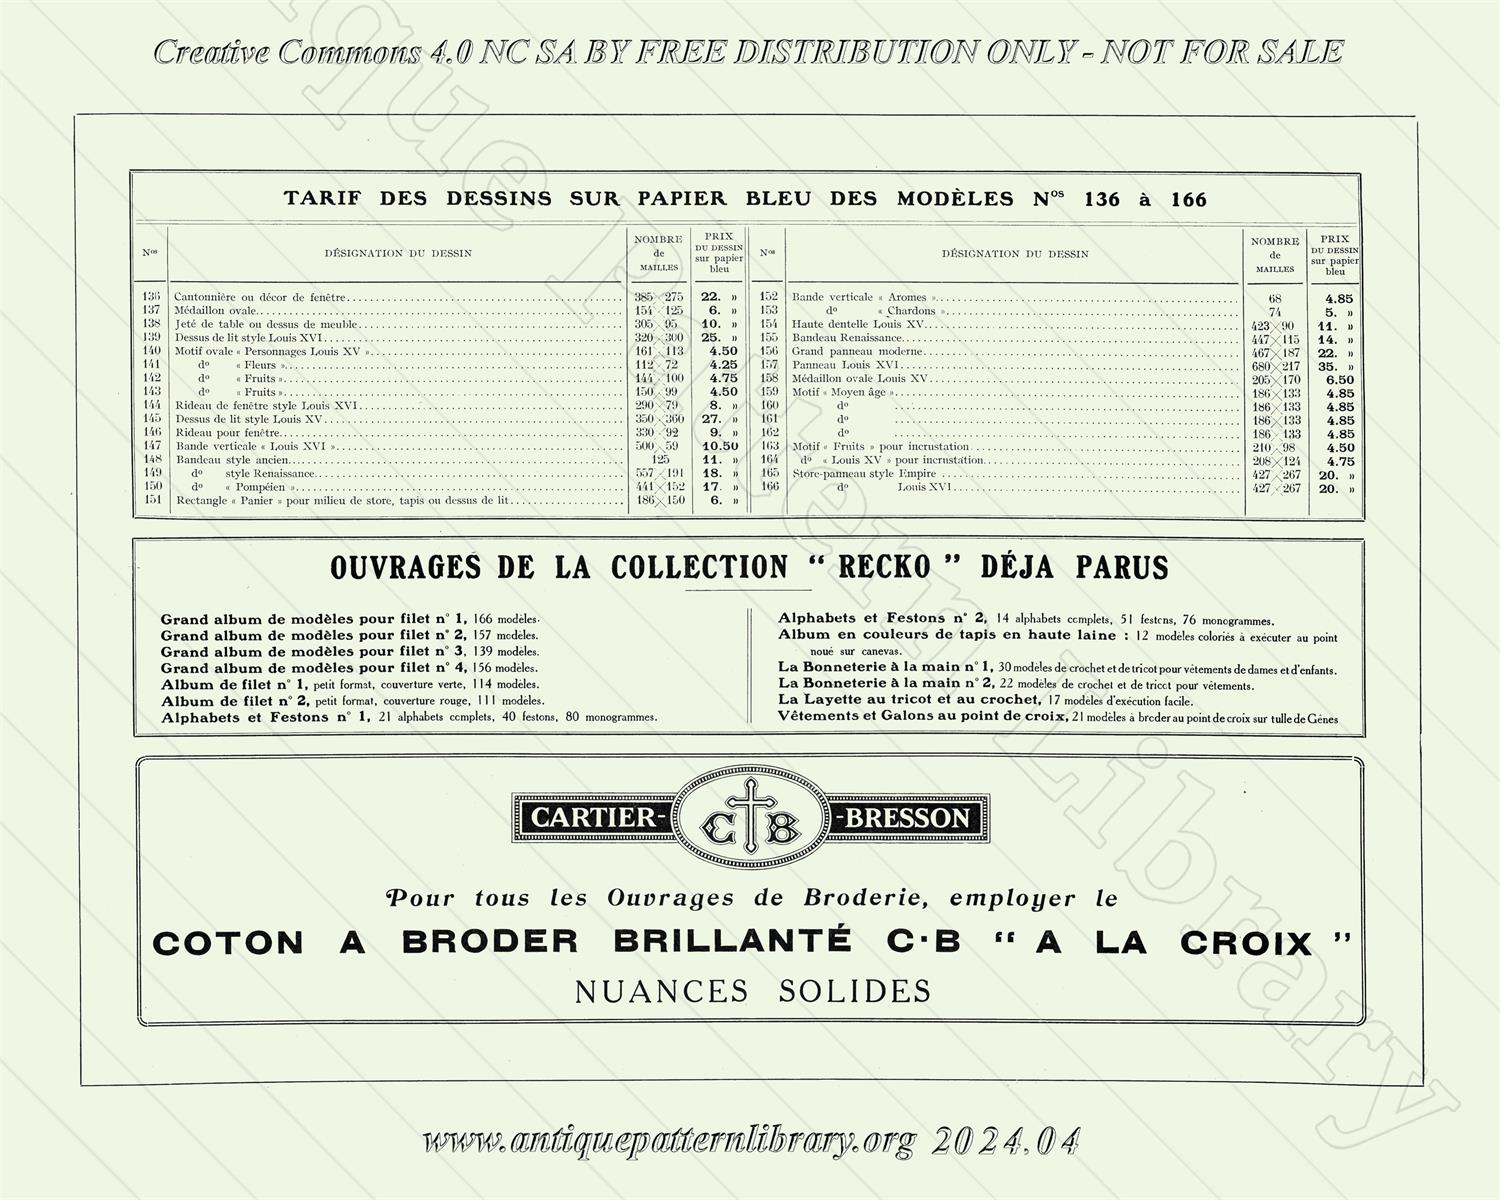 C-TT001 Grand Album de Modles pour Filet No. 1